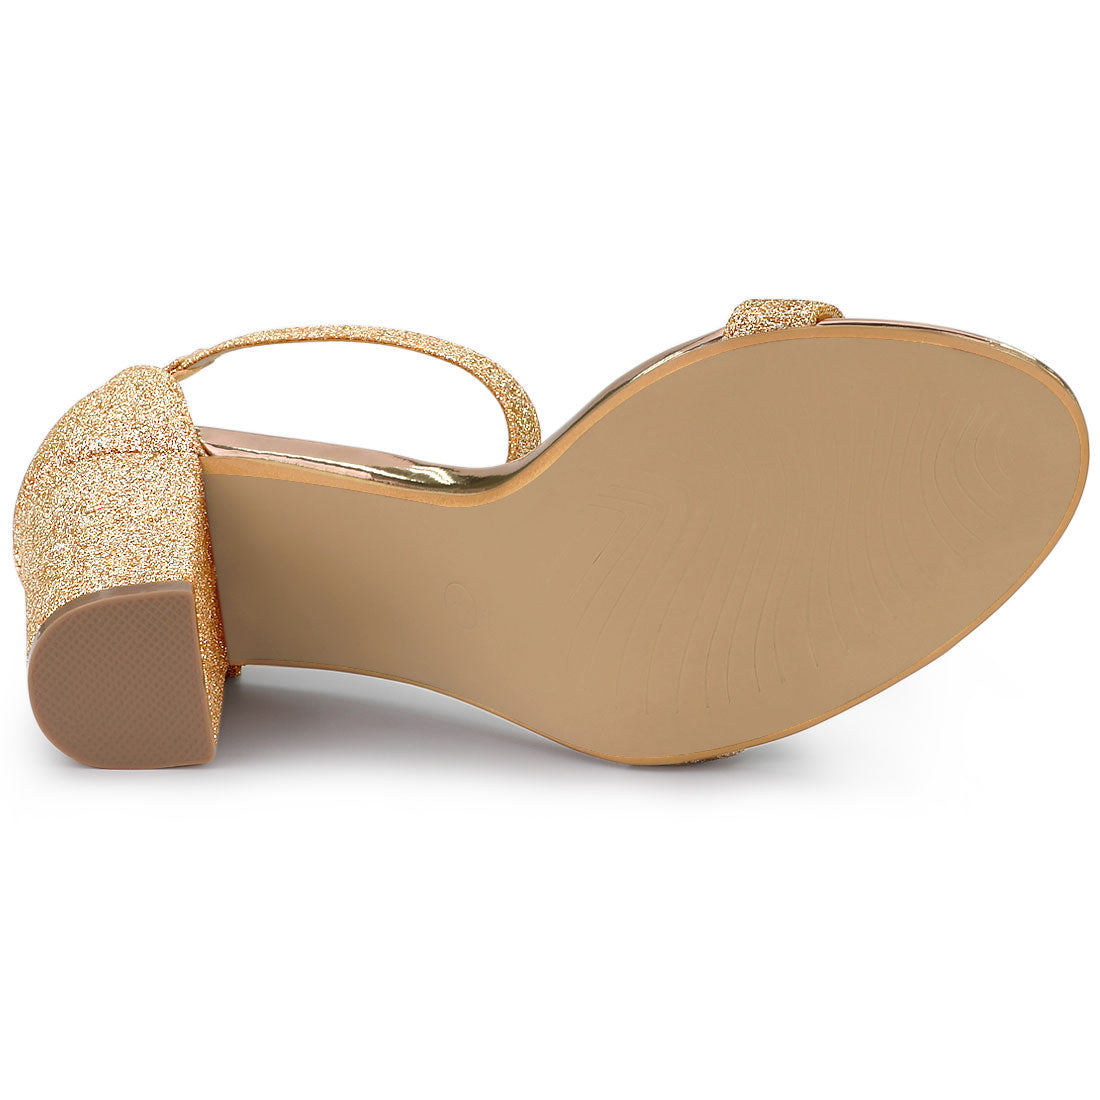 Allegra K Glitter Ankle Strap Chunky Heel Sandals